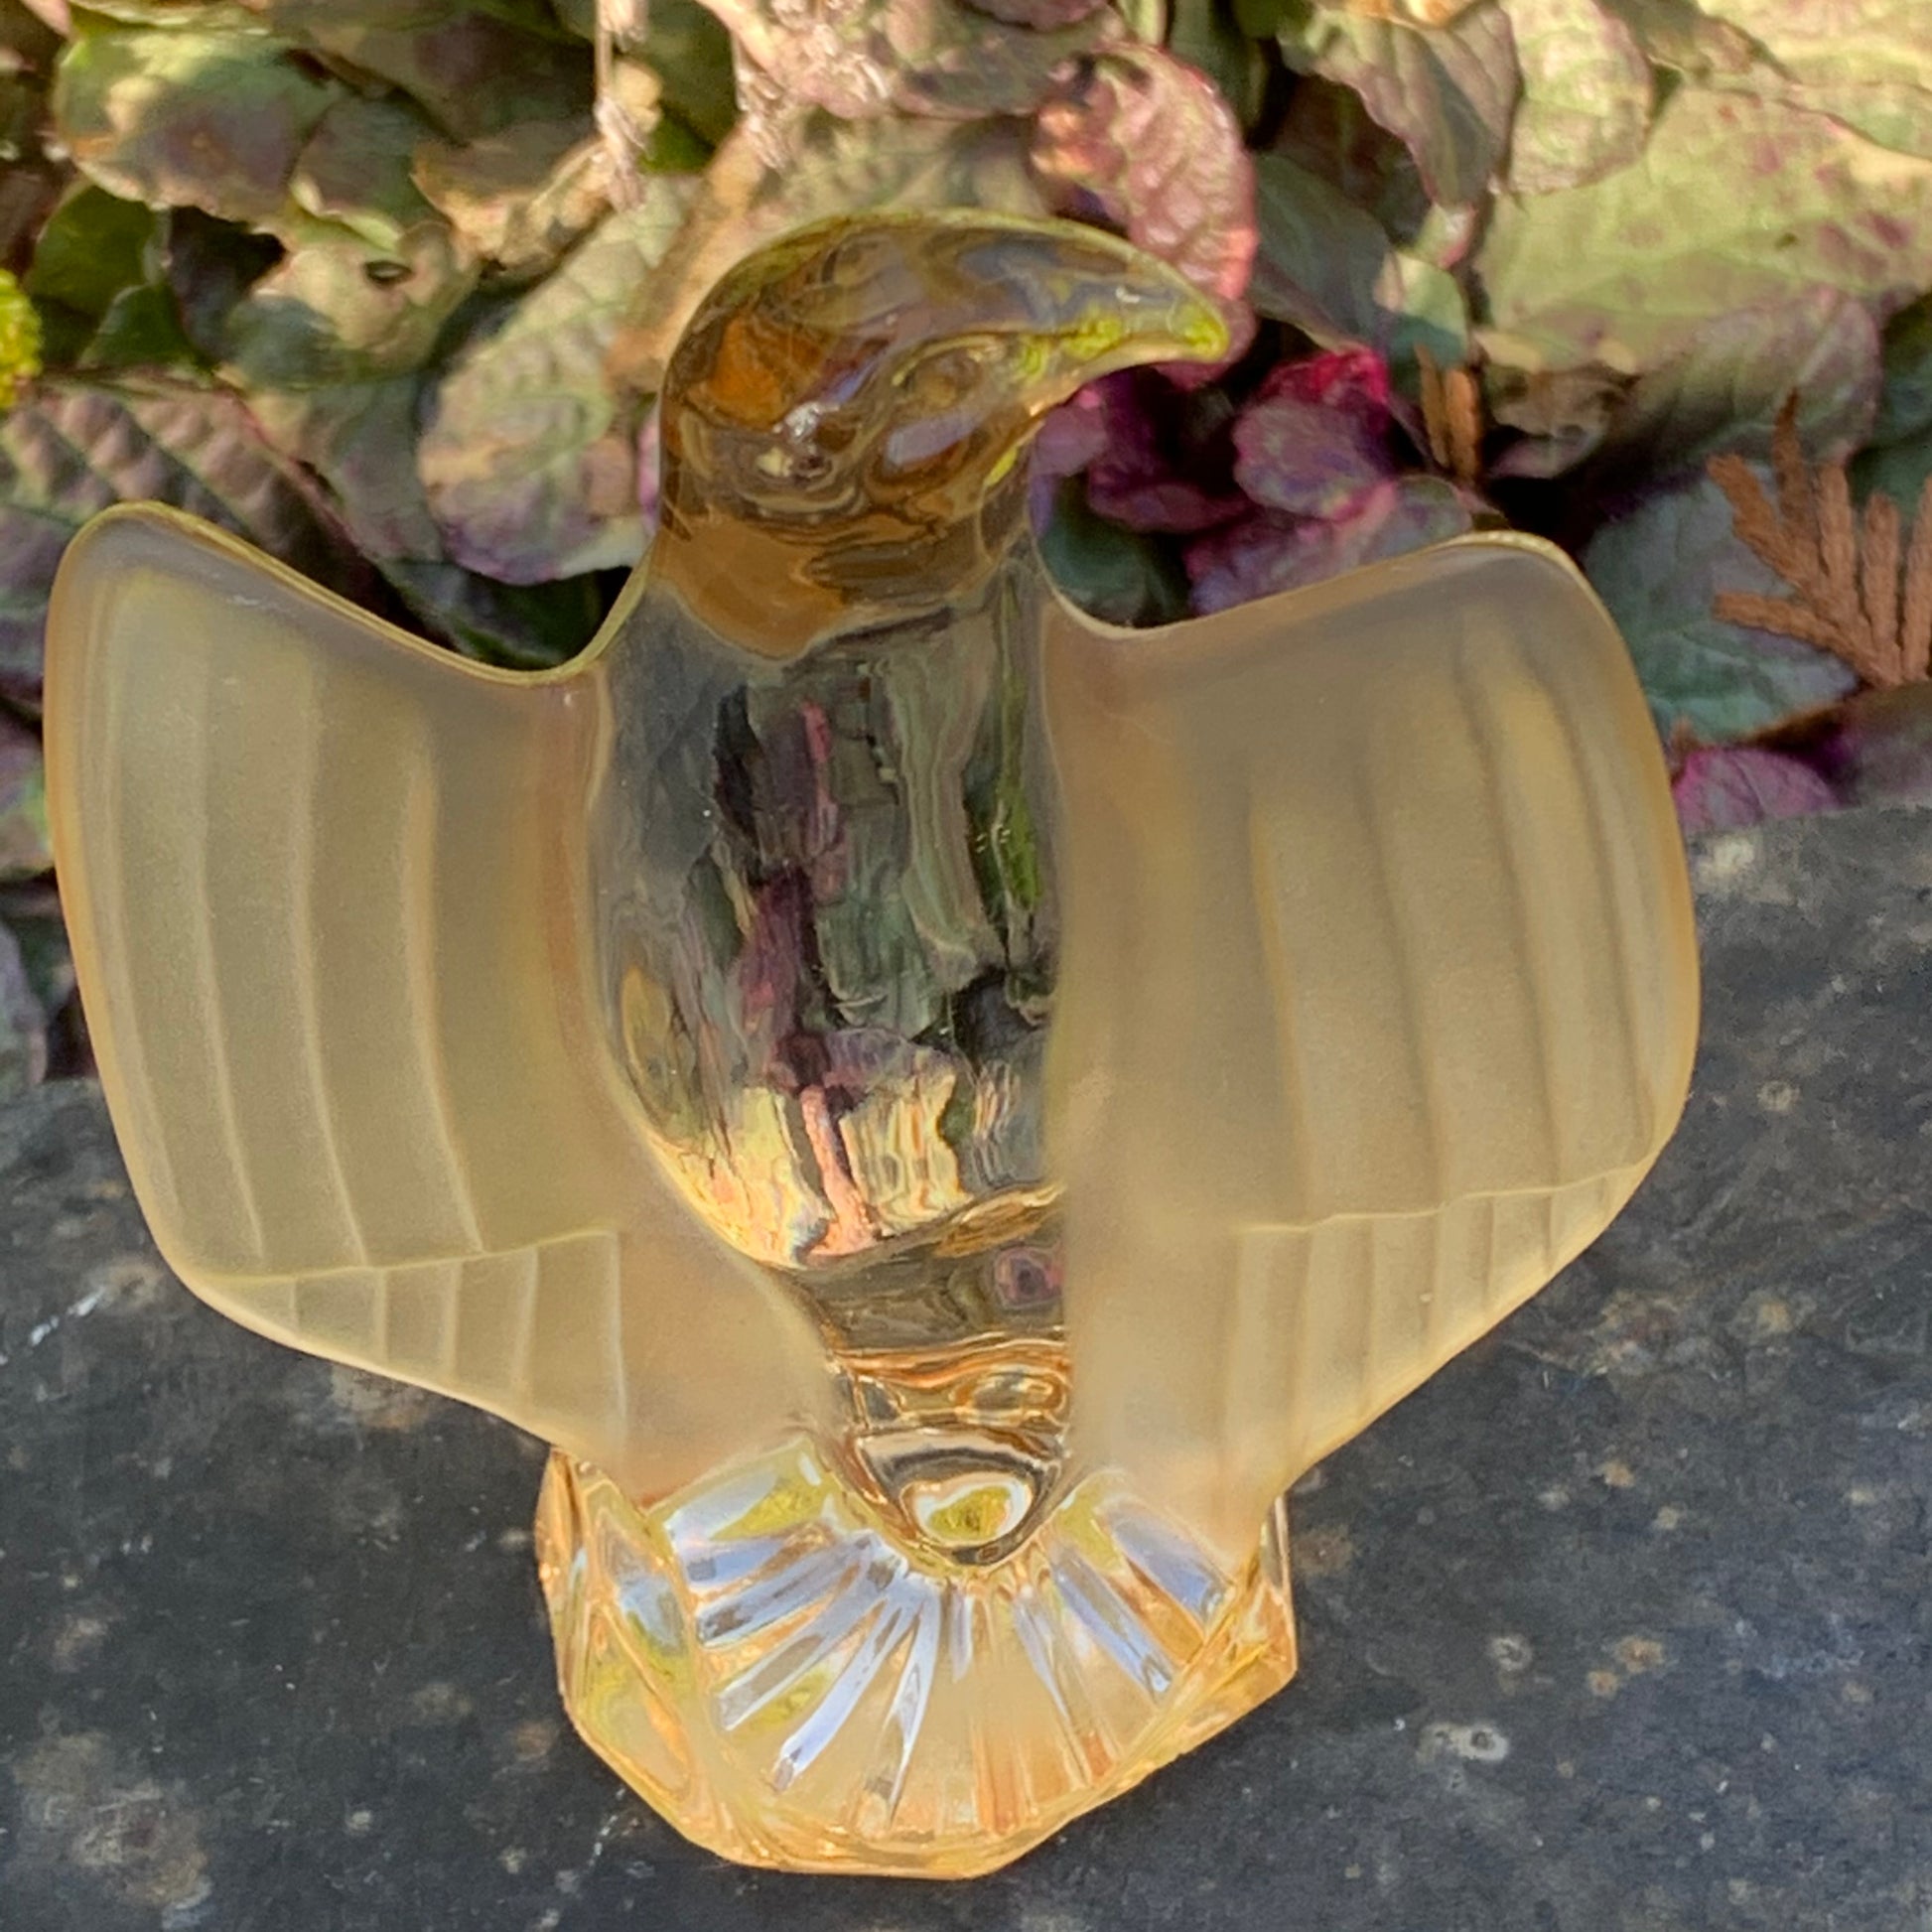 Crystal Bald Eagle Glass Figurine